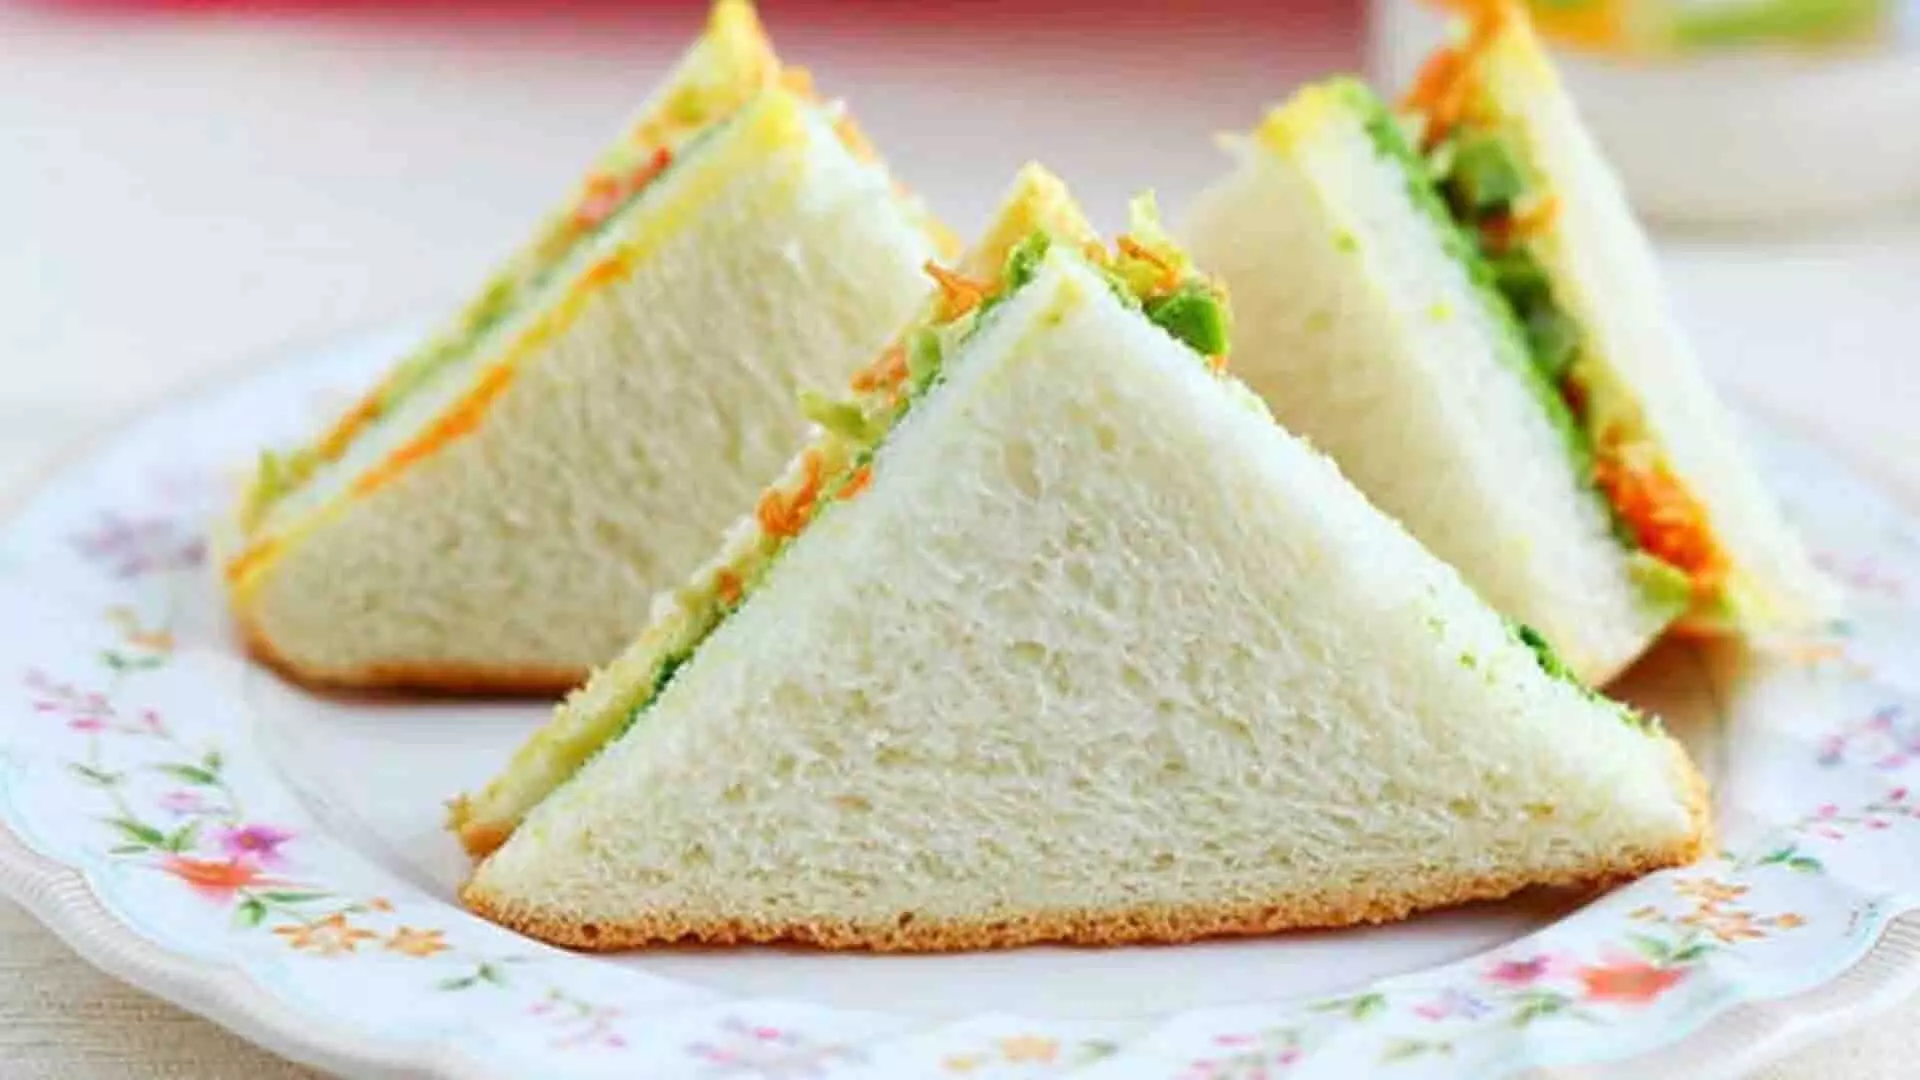 इस तरह बनाए मेयोनीज़ सैंडविच, बच्चों का ब्रेकफास्ट बनेगा स्पेशल